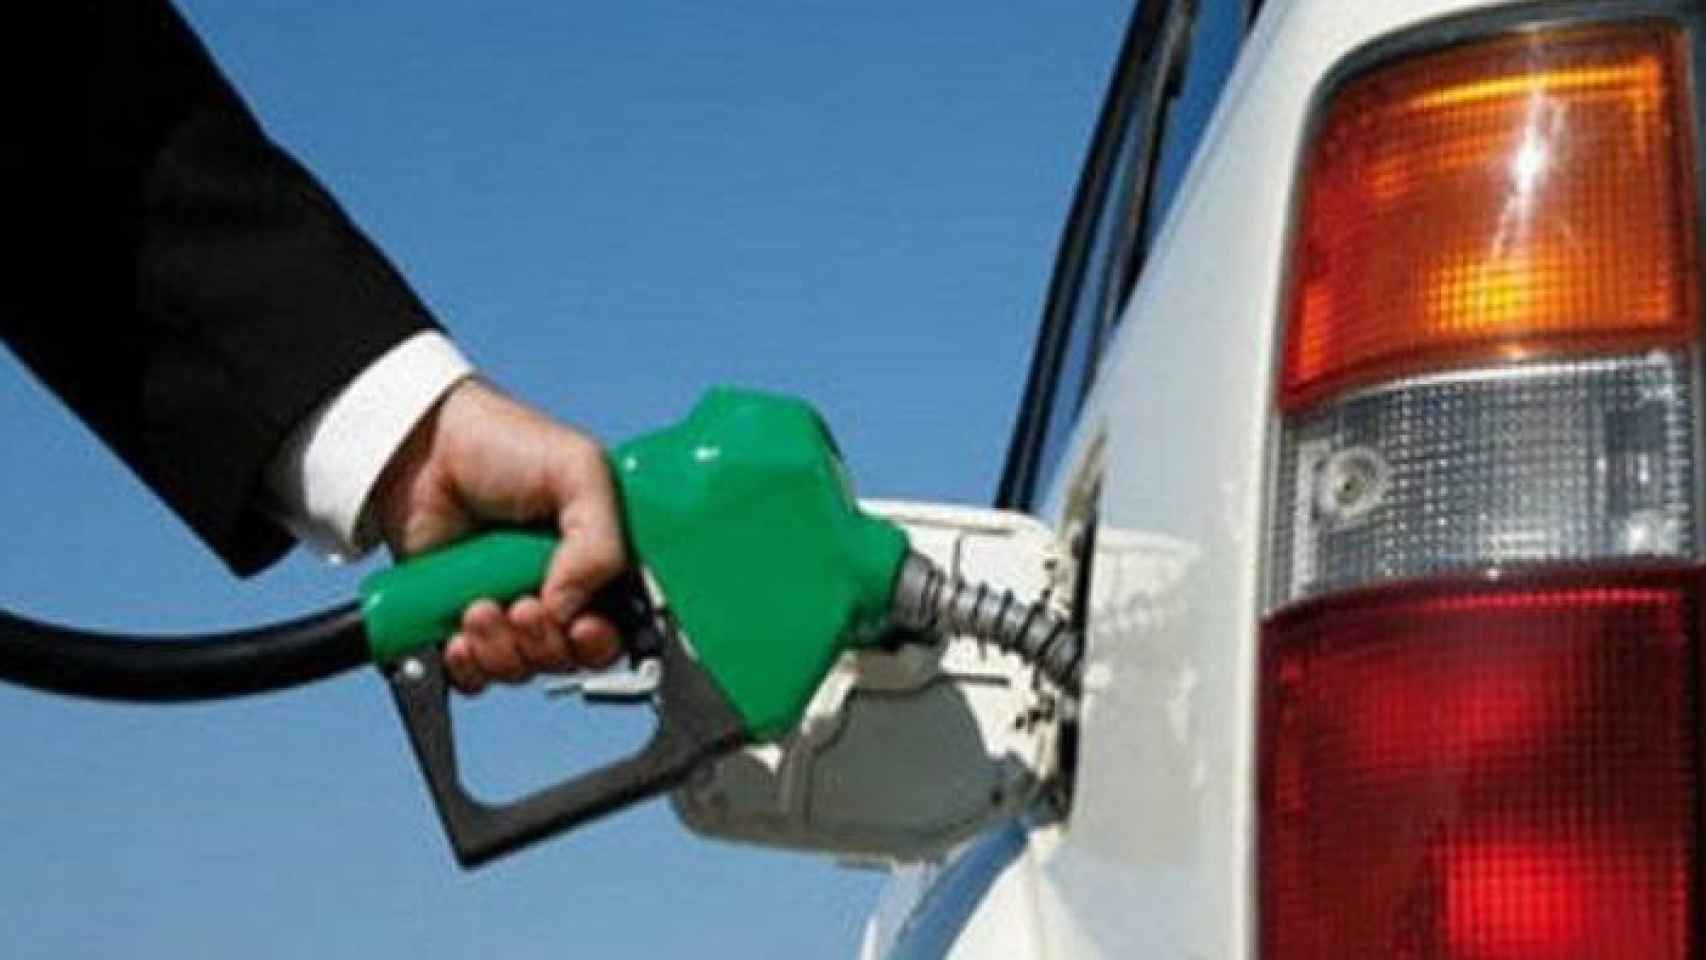 Competencia detecta un “elevado paralelismo” en los precios de la gasolina.